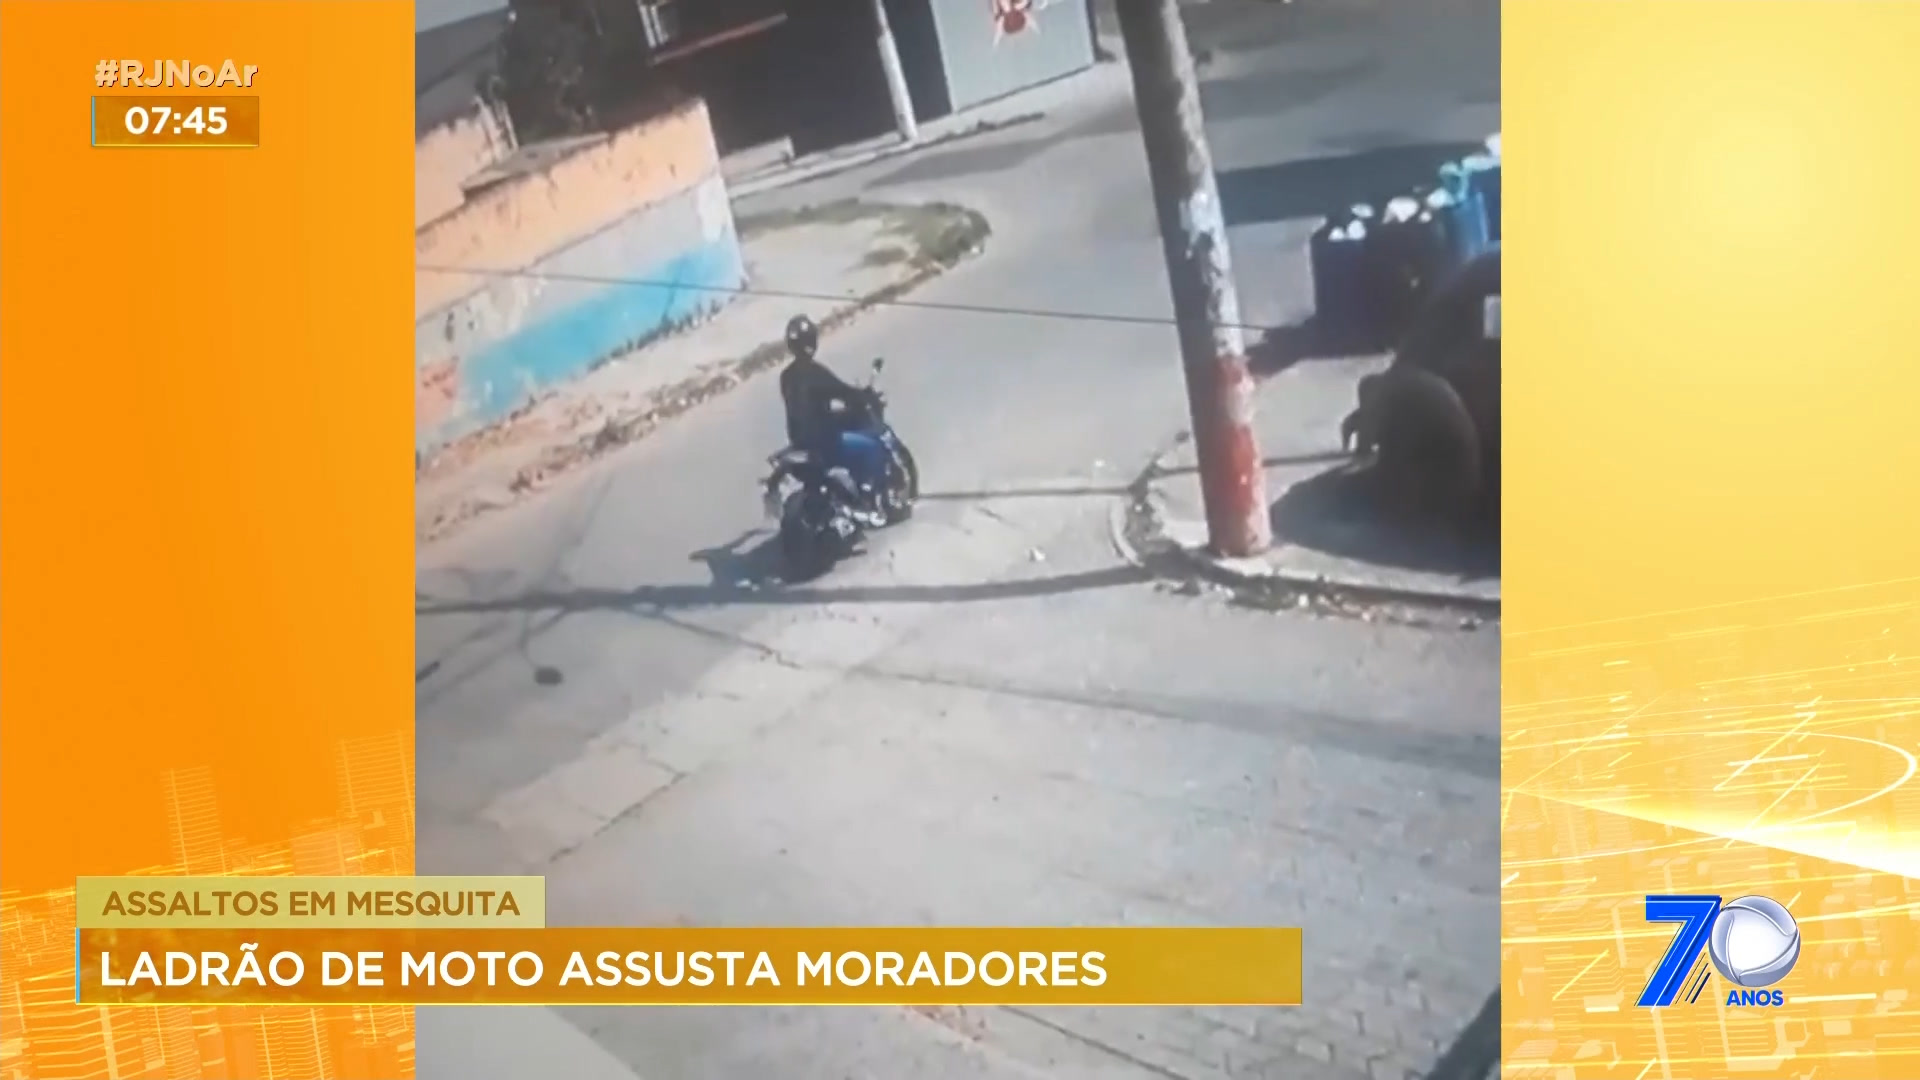 Vídeo: Assaltante de moto assusta moradores em Mesquita, na Baixada Fluminense